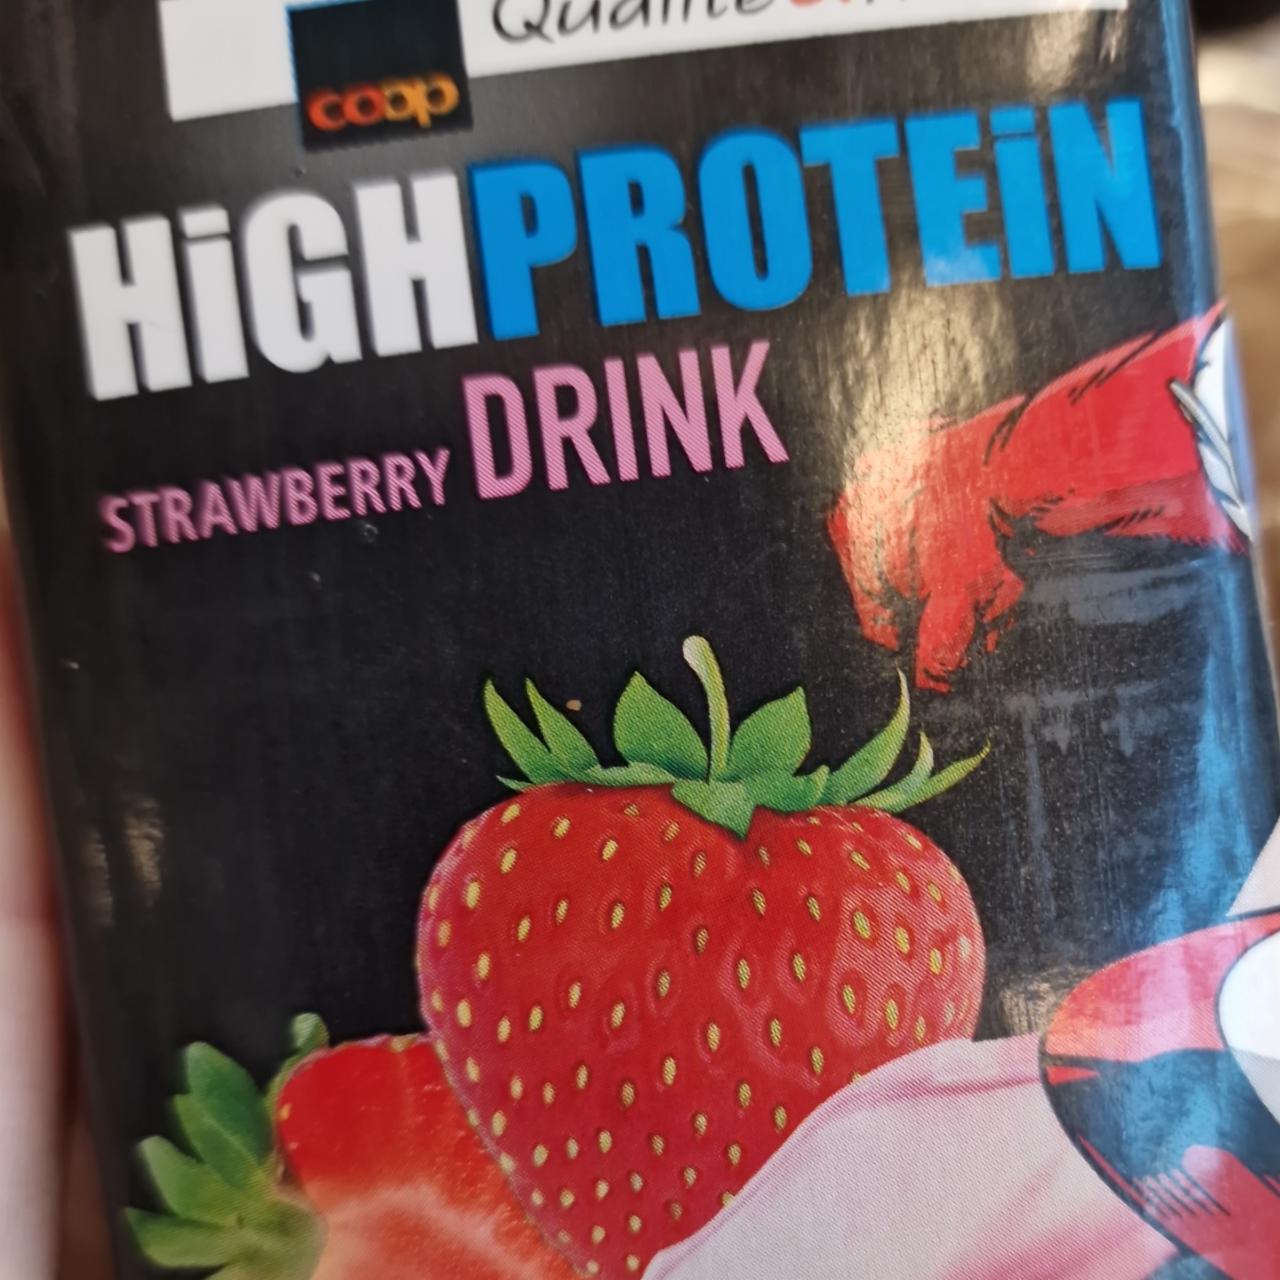 Fotografie - High Protein Strawberry Drink Coop